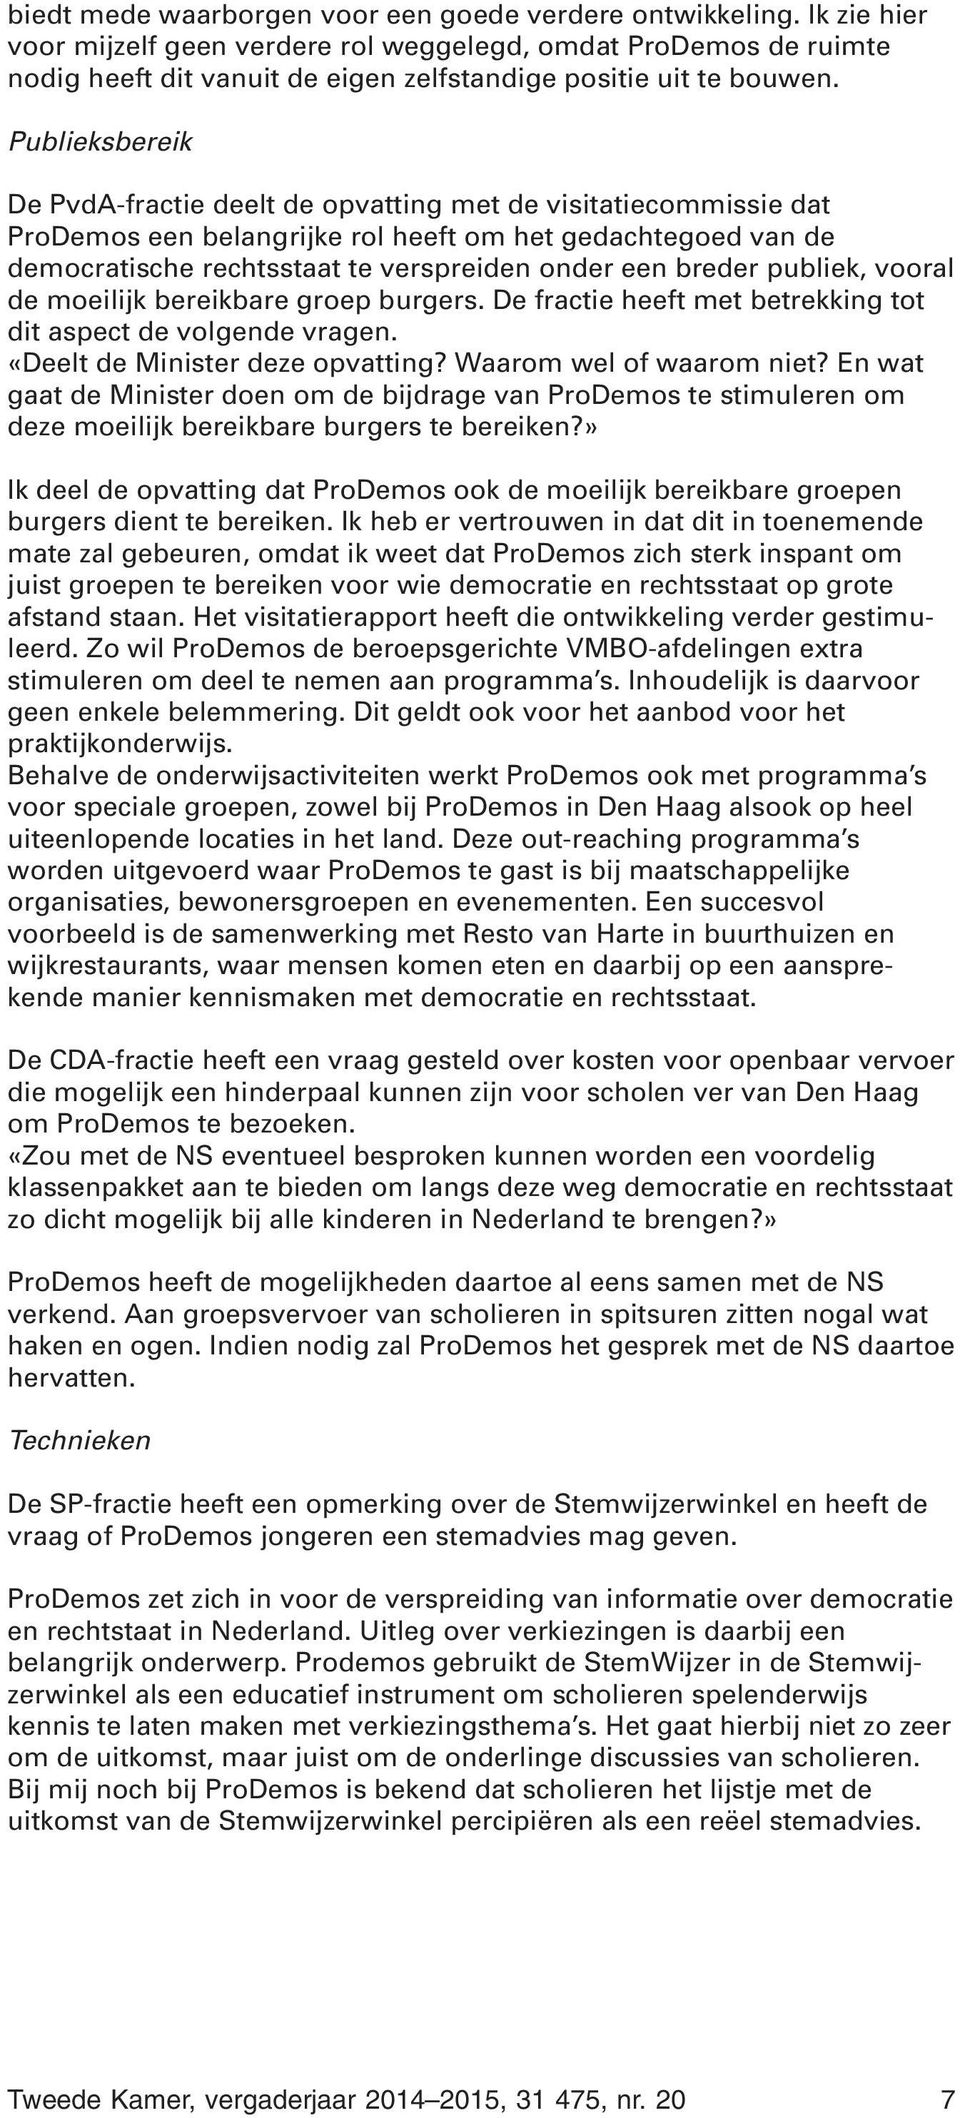 Publieksbereik De PvdA-fractie deelt de opvatting met de visitatiecommissie dat ProDemos een belangrijke rol heeft om het gedachtegoed van de democratische rechtsstaat te verspreiden onder een breder